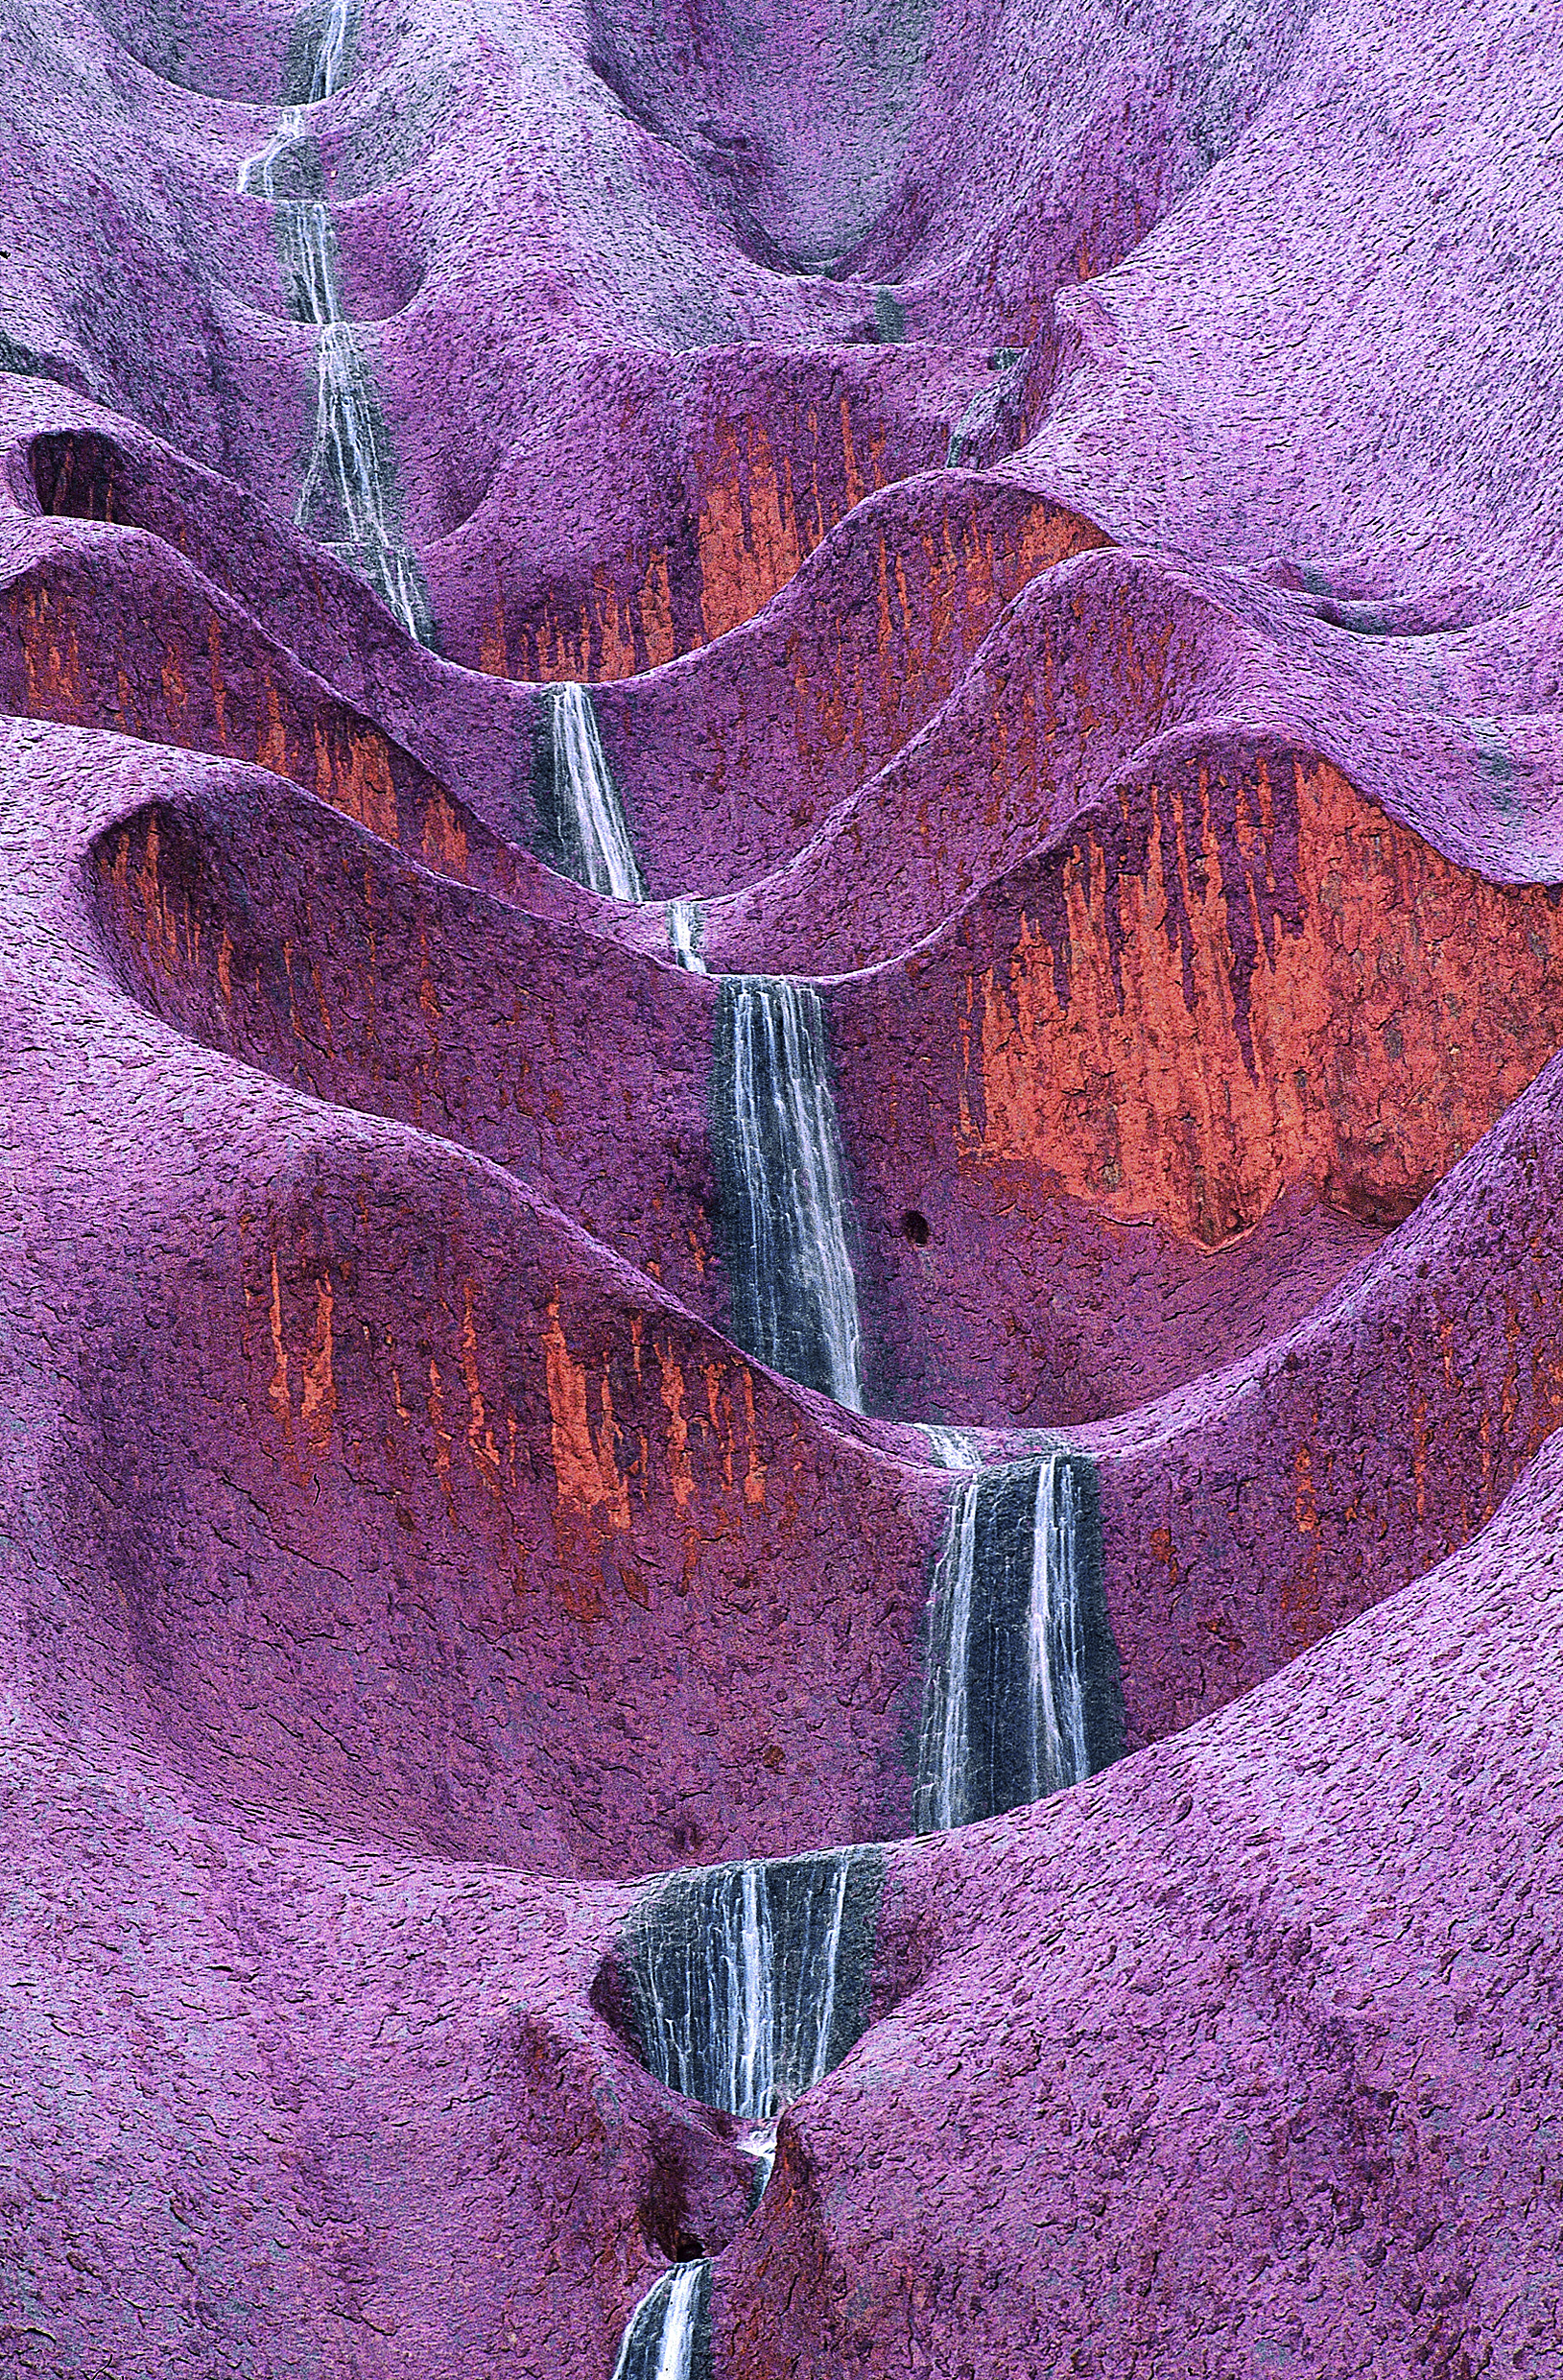 Waterfalls on Uluru